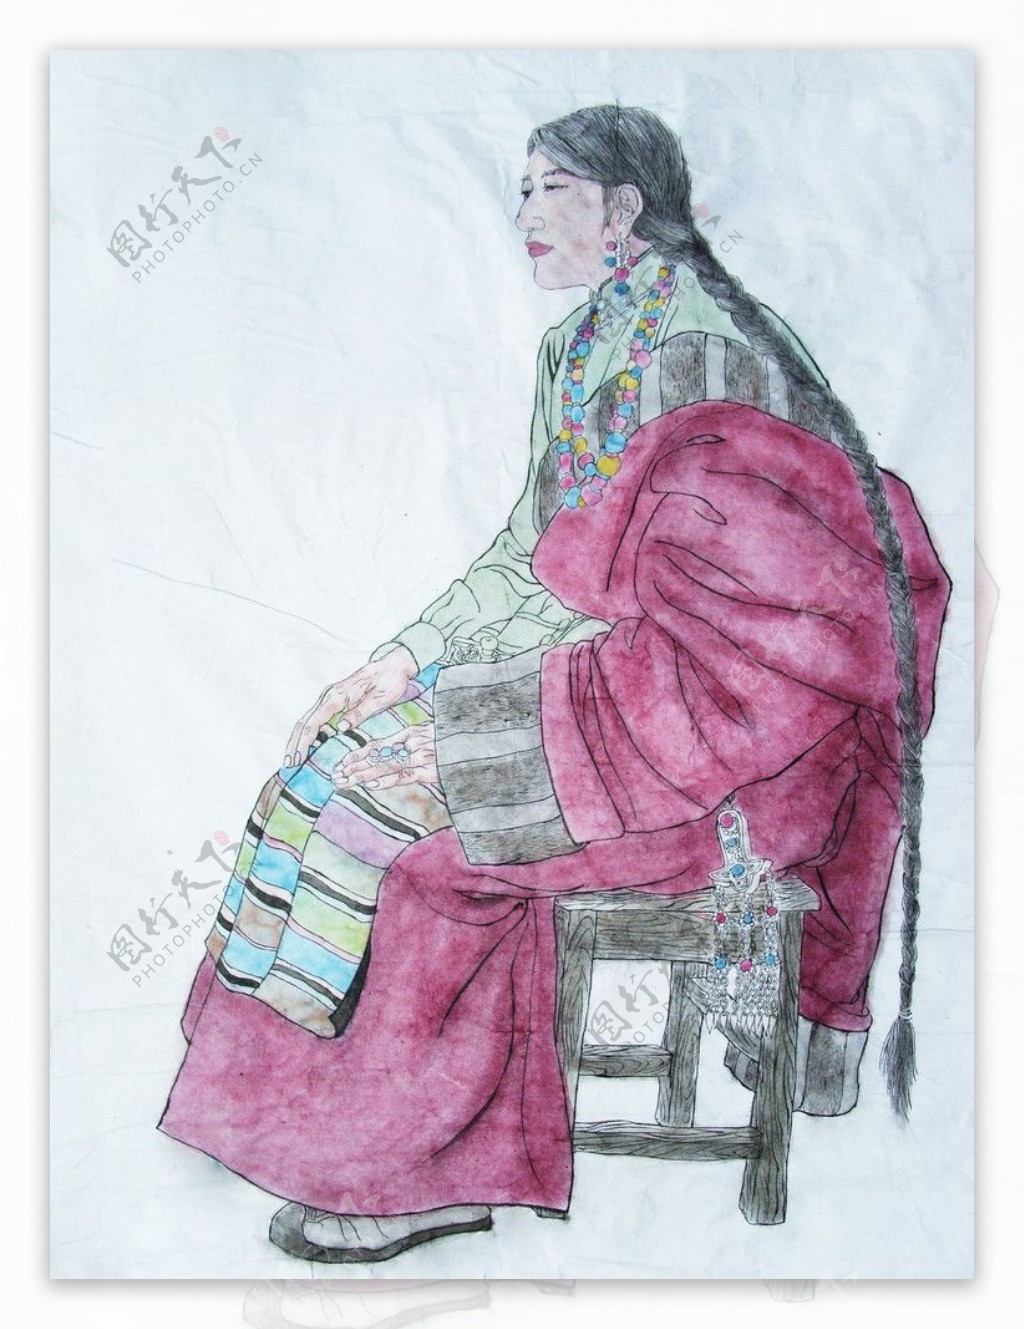 工笔国画藏族女子图片